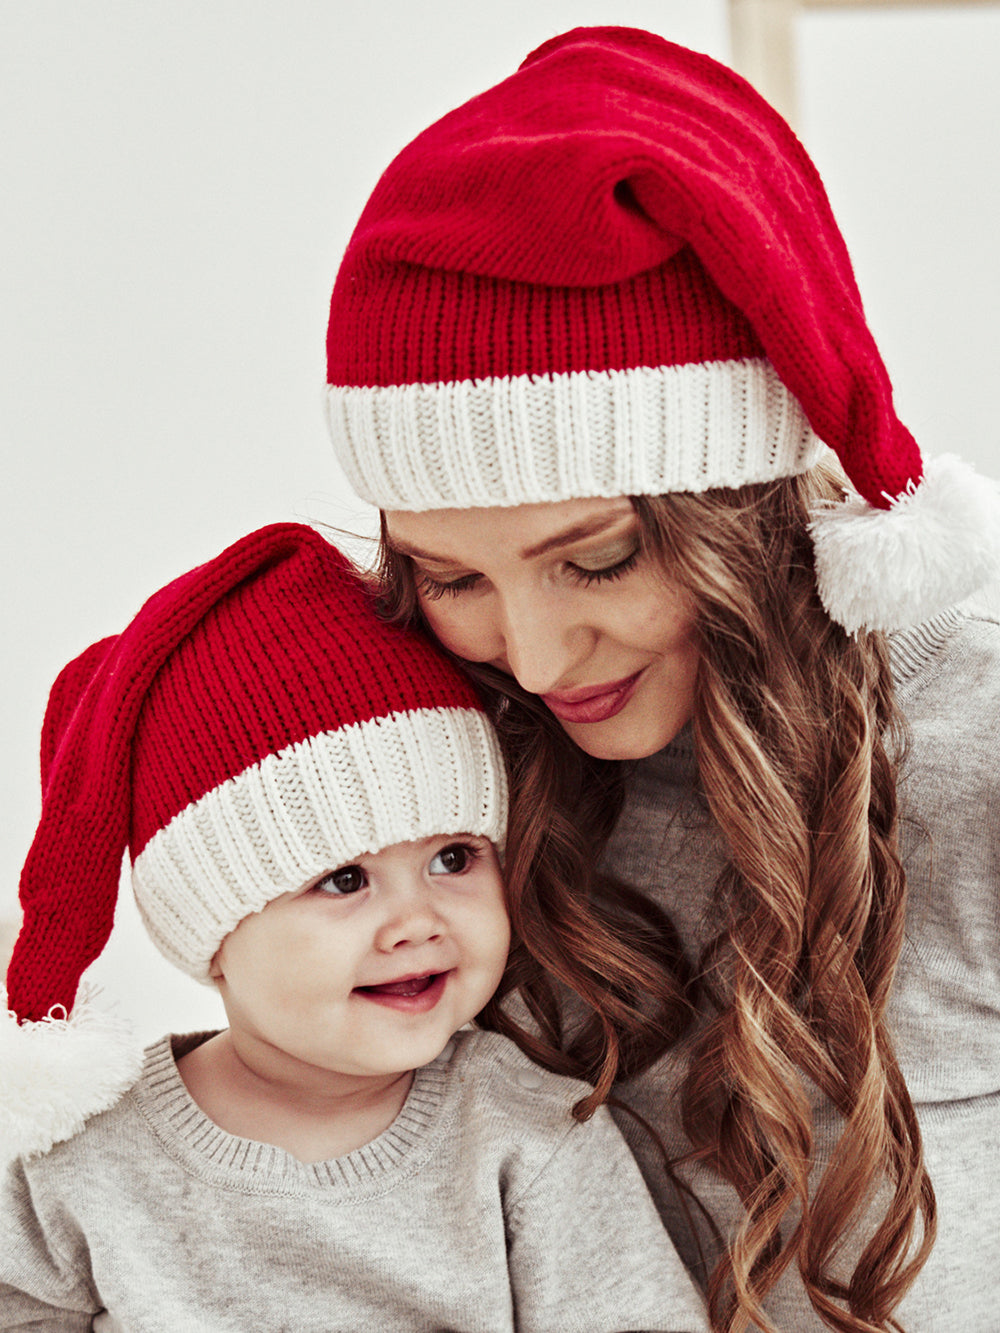 Χριστουγεννιάτικη γούνινη μπάλα μαμάς και μωρού πλεκτό καπέλο